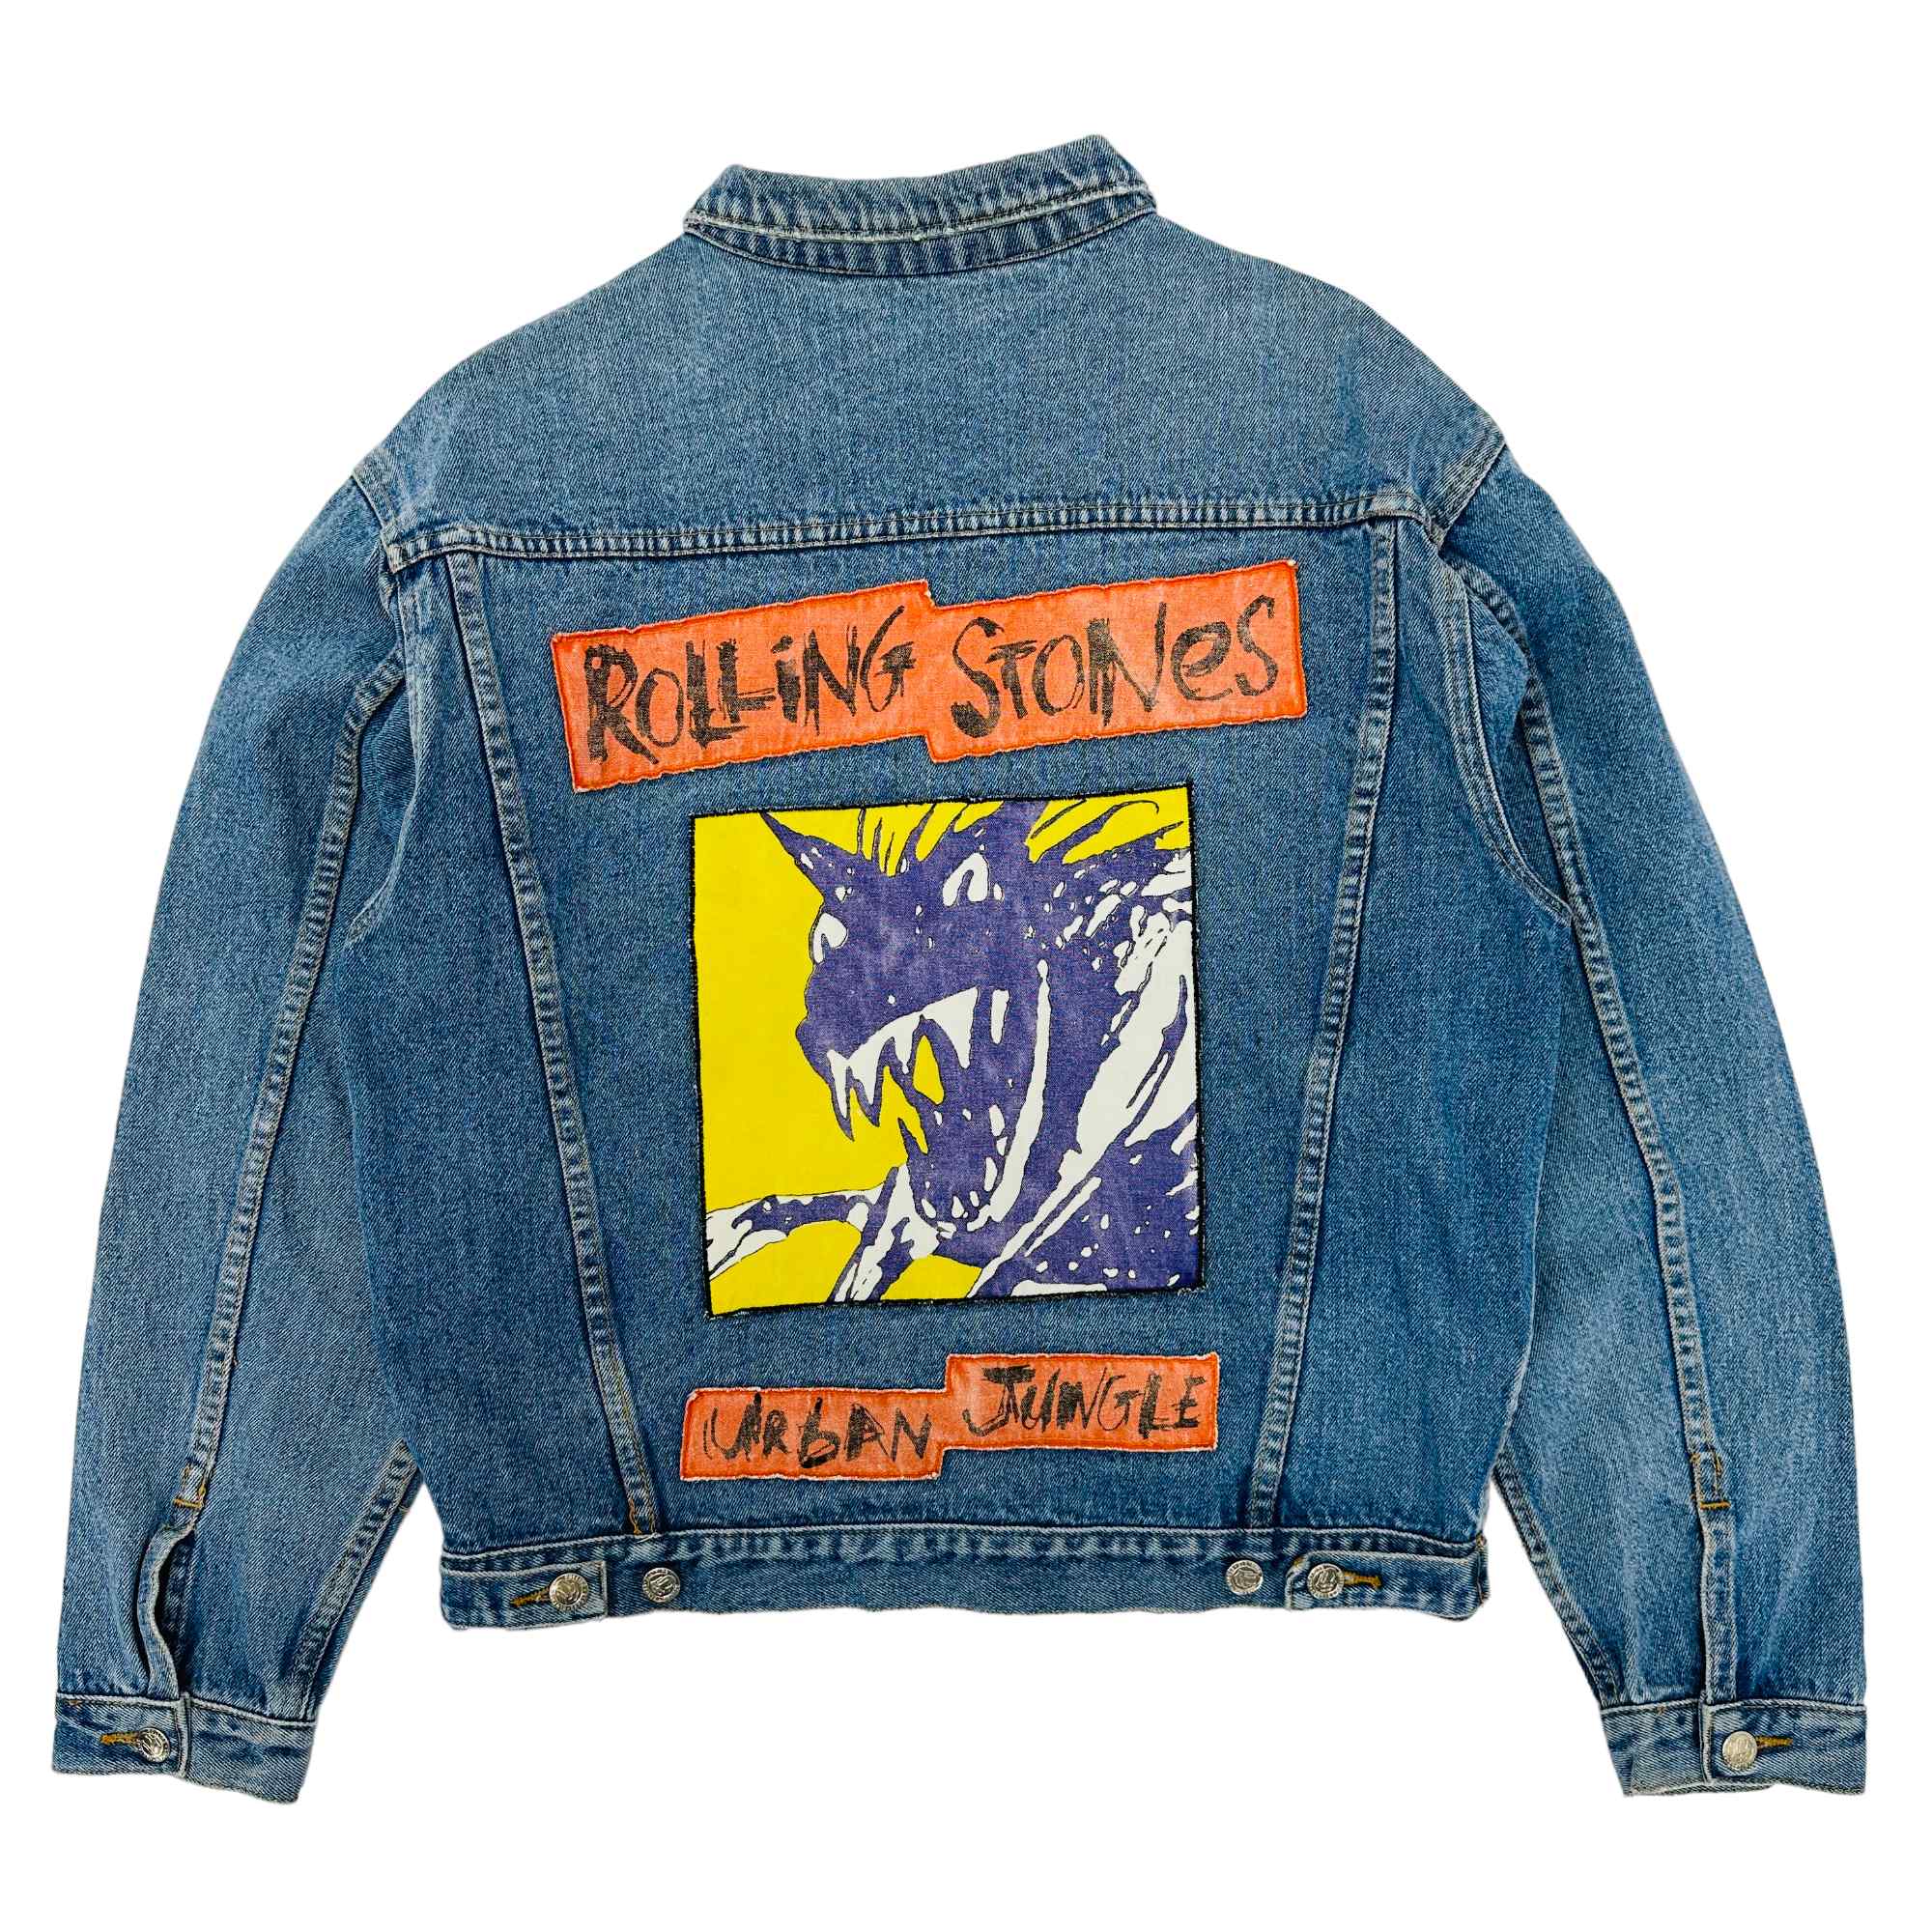 1990 Rolling Stones Urban Jungle Tour Denim Jacket - Medium